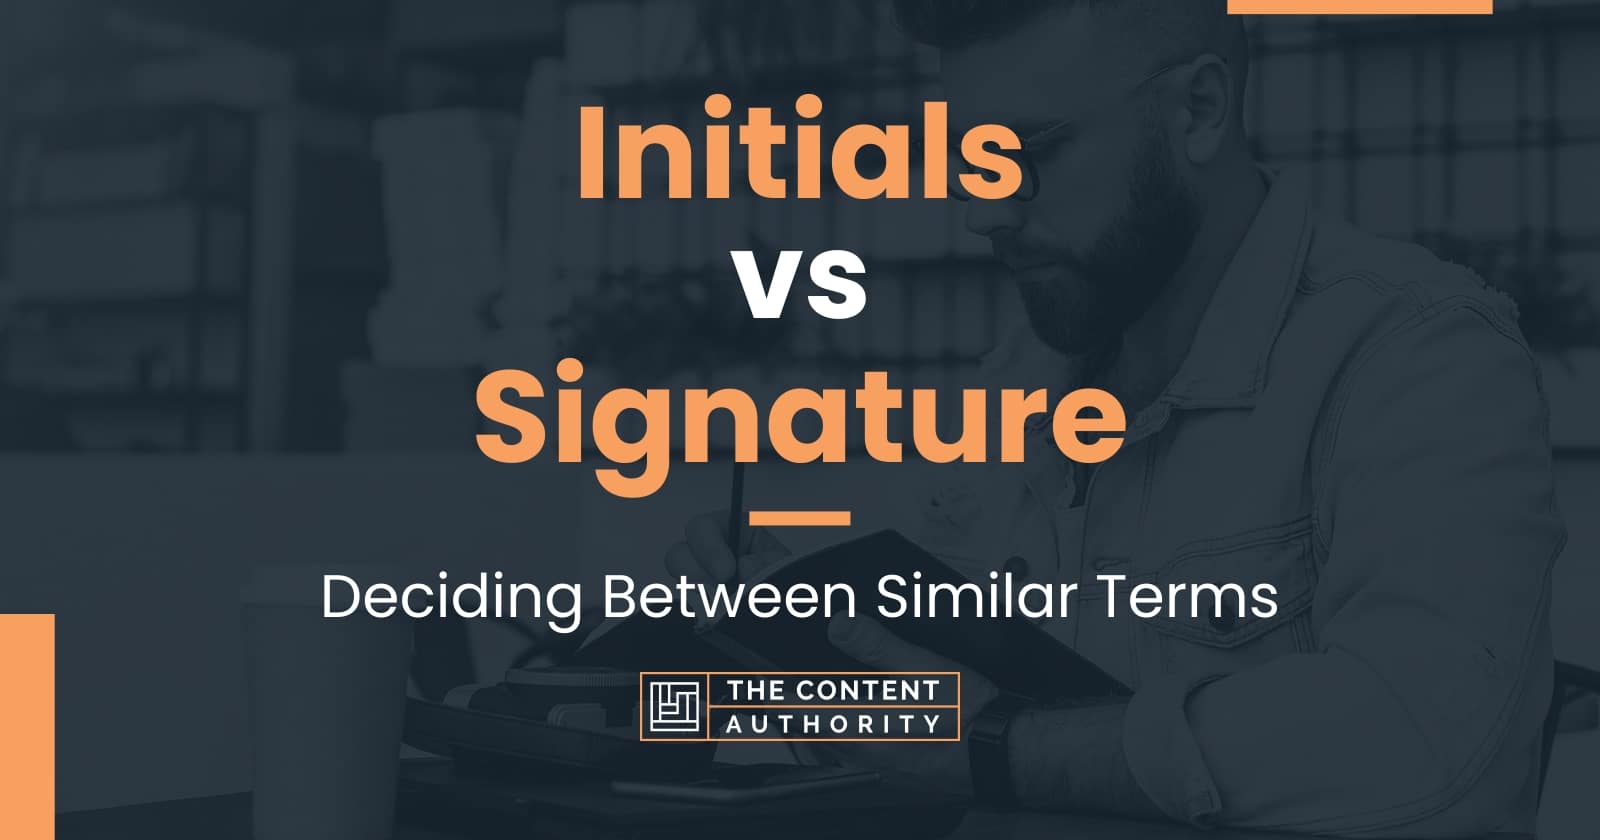 Initials vs Signature: Deciding Between Similar Terms